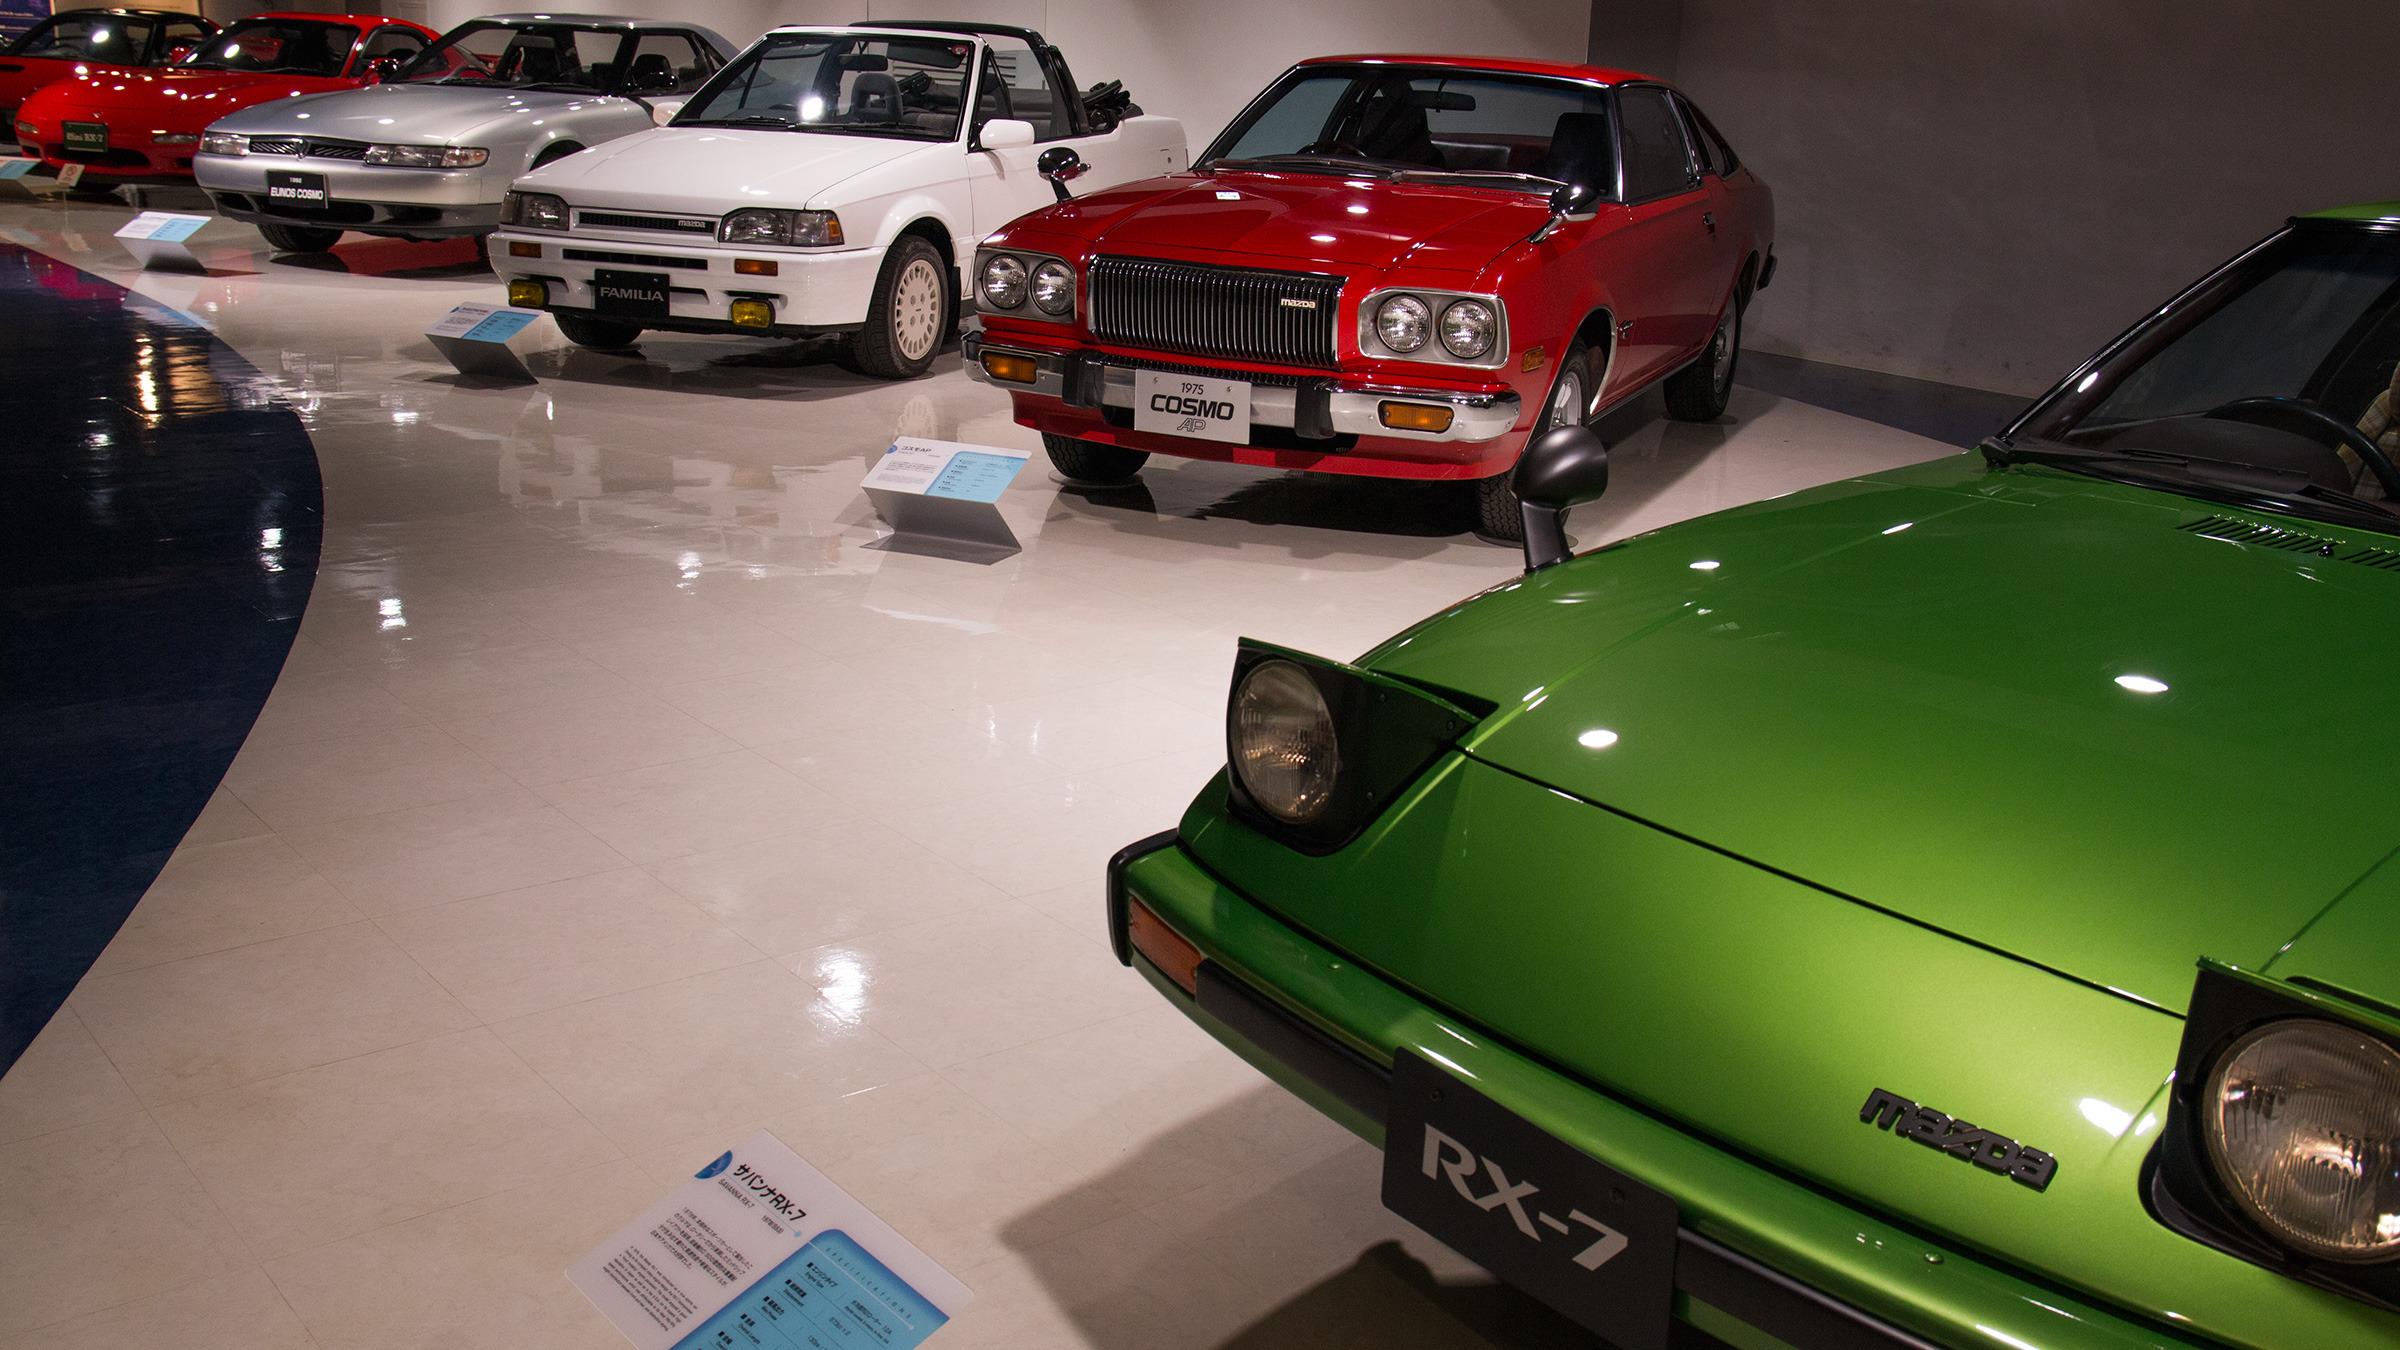 Mazda håper å se biler fra alle sine æraer i Hiroshima i 2020, når de feirer sitt hundreårsjubileum.Foto: Varg Aamo, Hardware.no